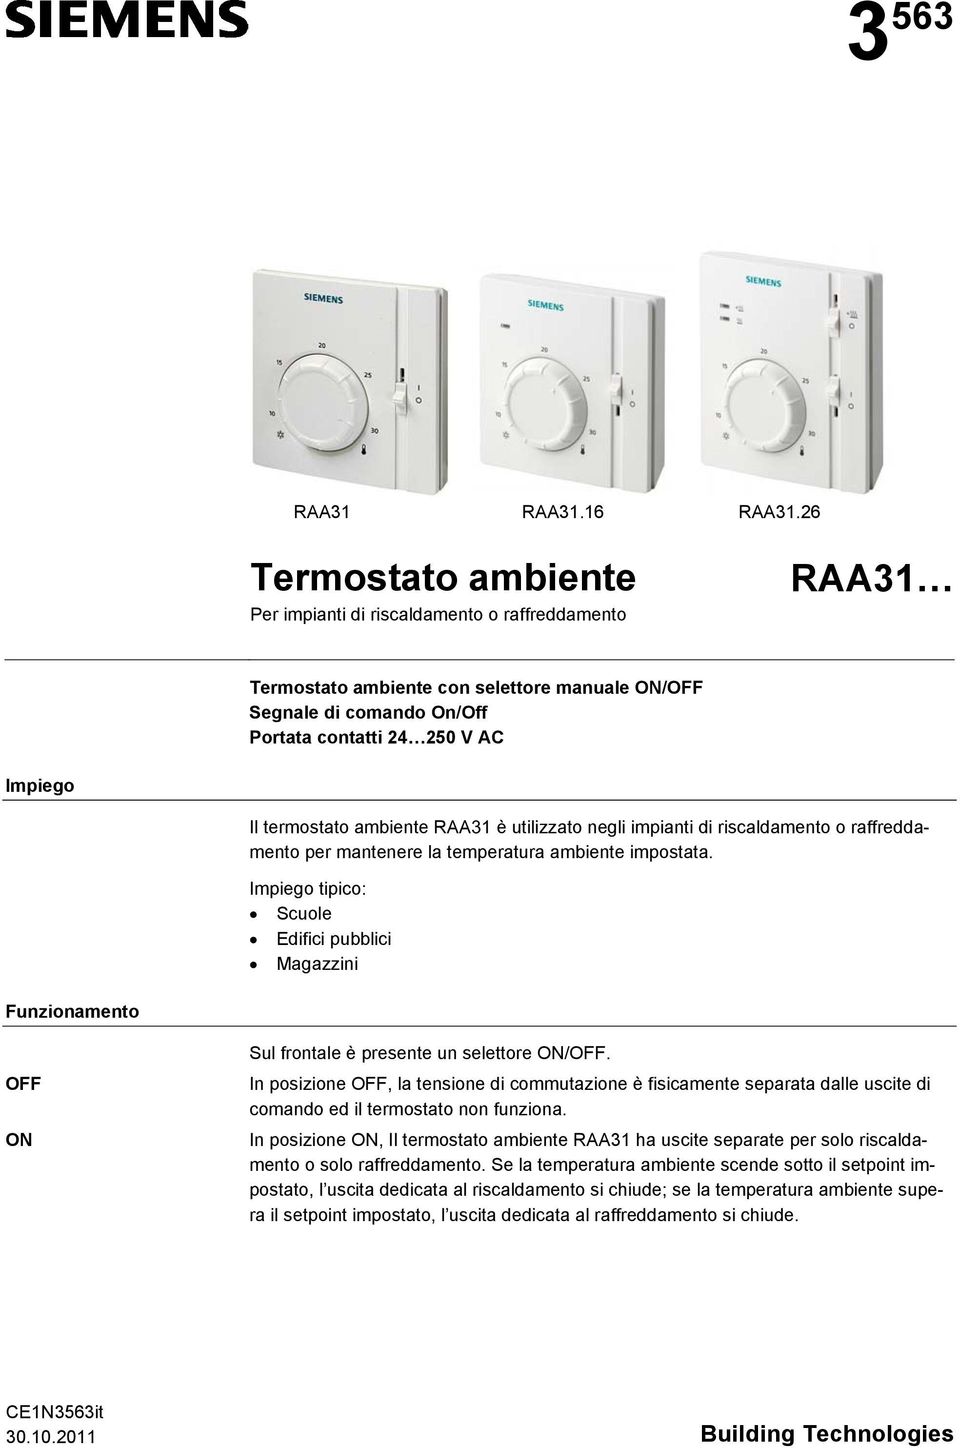 termostato ambiente RAA31 è utilizzato negli impianti di riscaldamento o raffreddamento per mantenere la temperatura ambiente impostata.